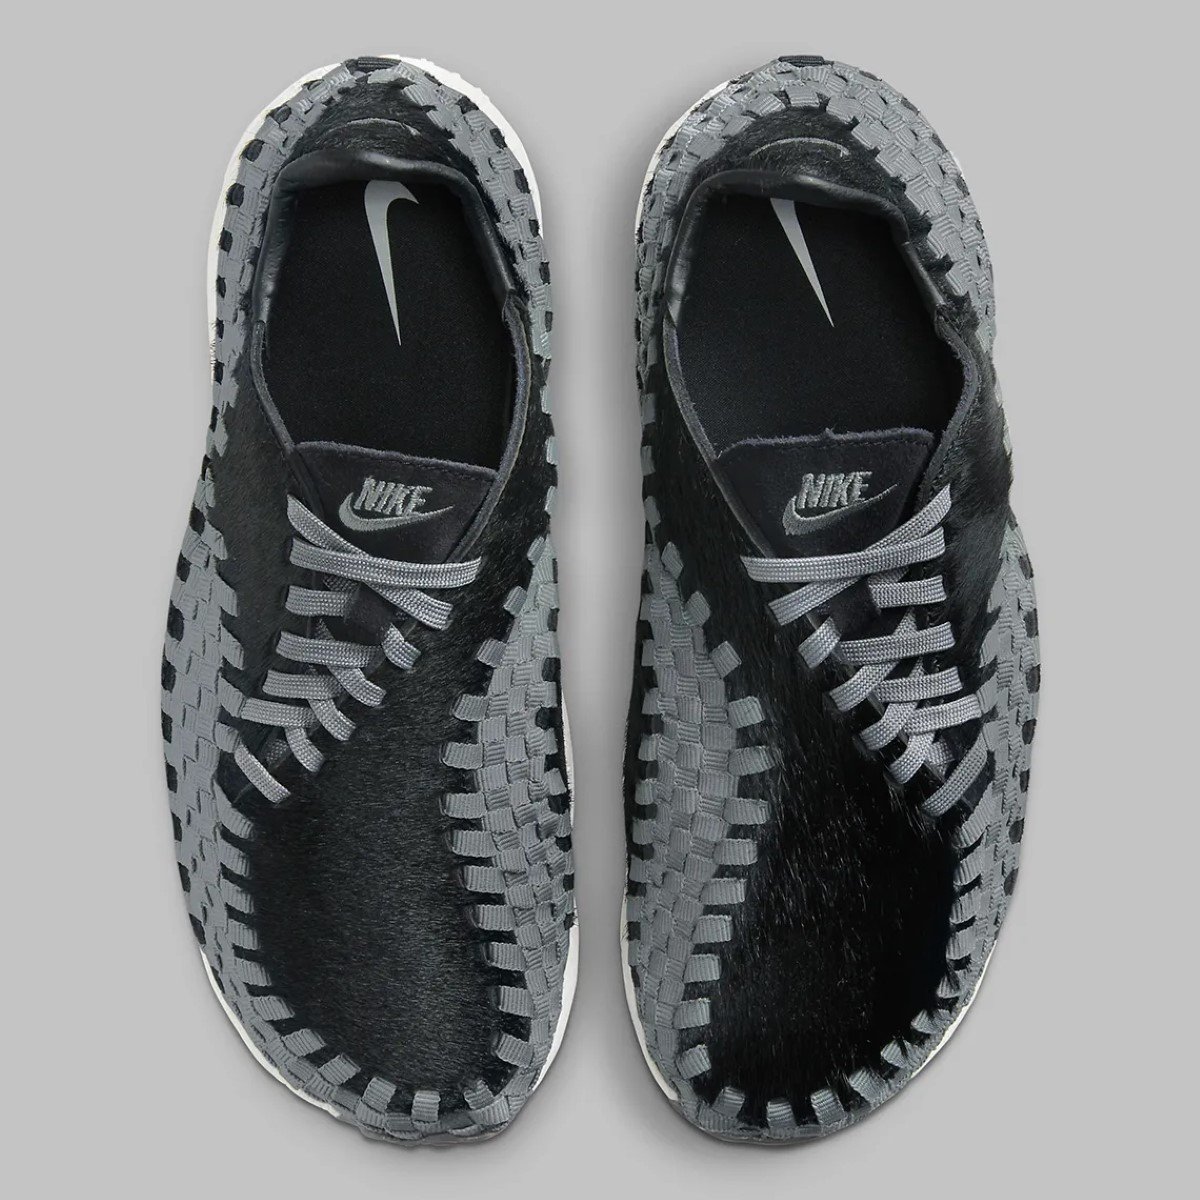 La Nike Air Footscape Woven "Black/Smoke Grey" enveloppée de fausse fourrure noire